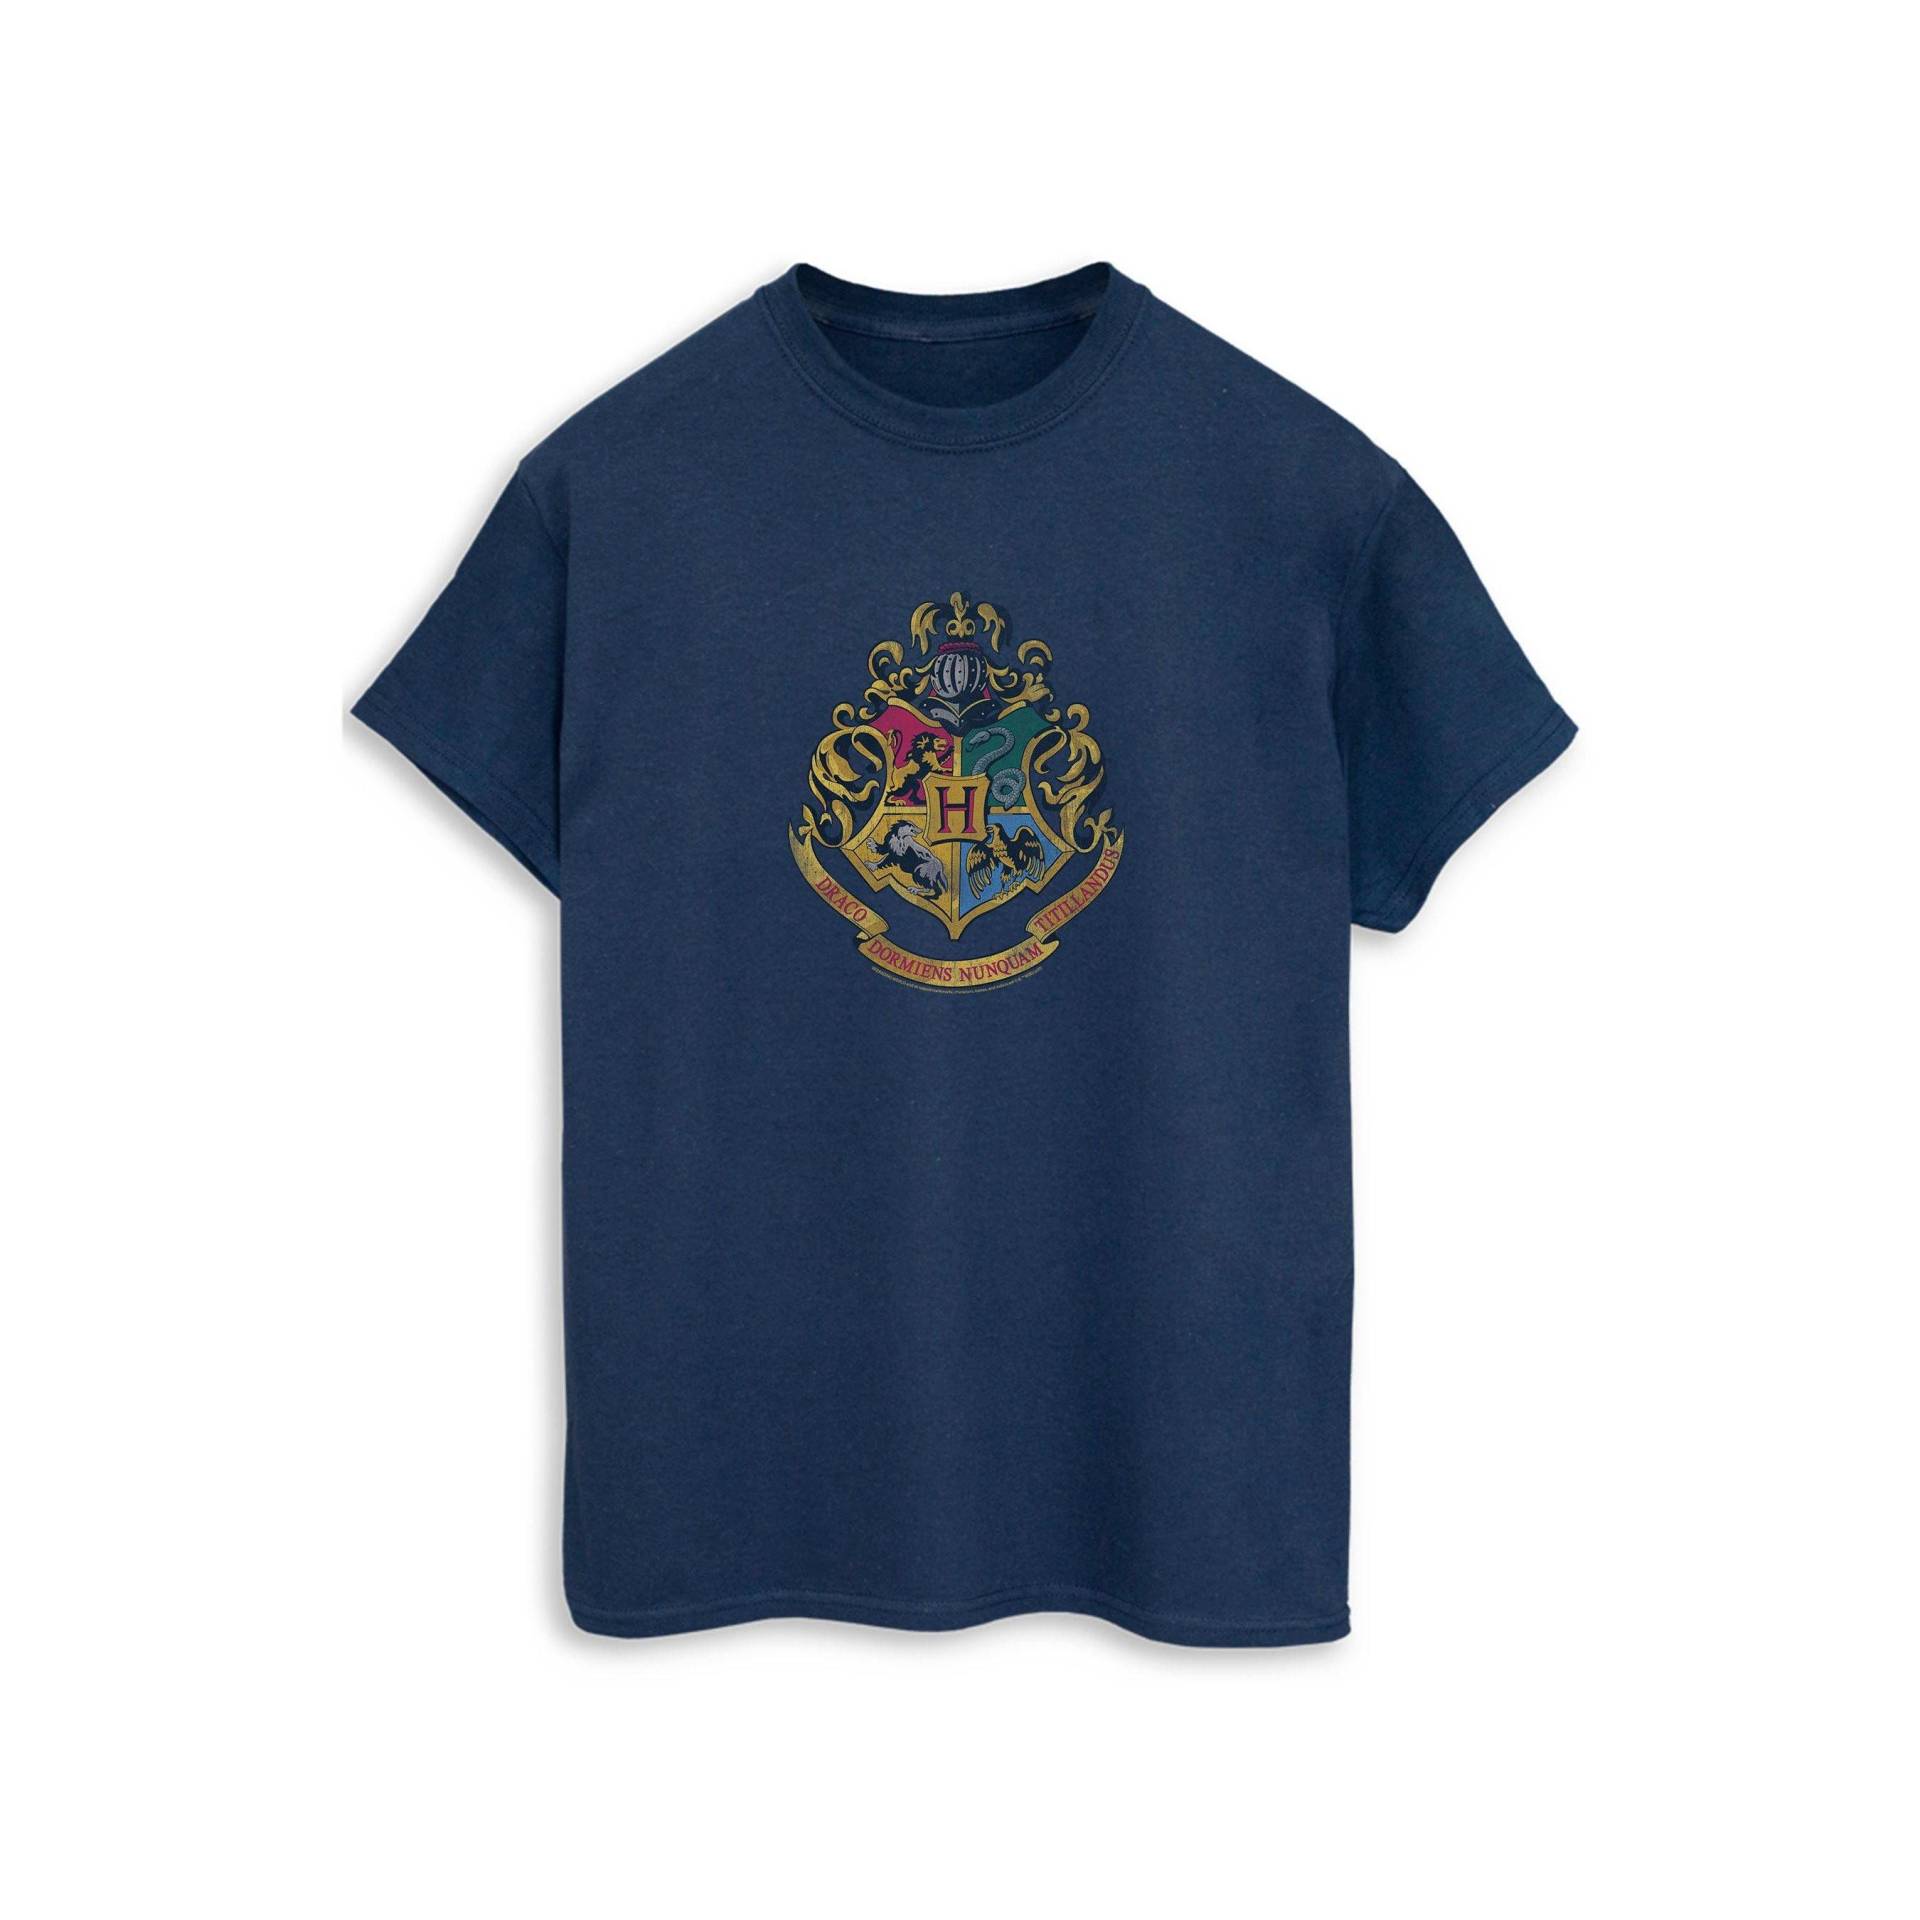 Tshirt Herren Marine 3XL von Harry Potter